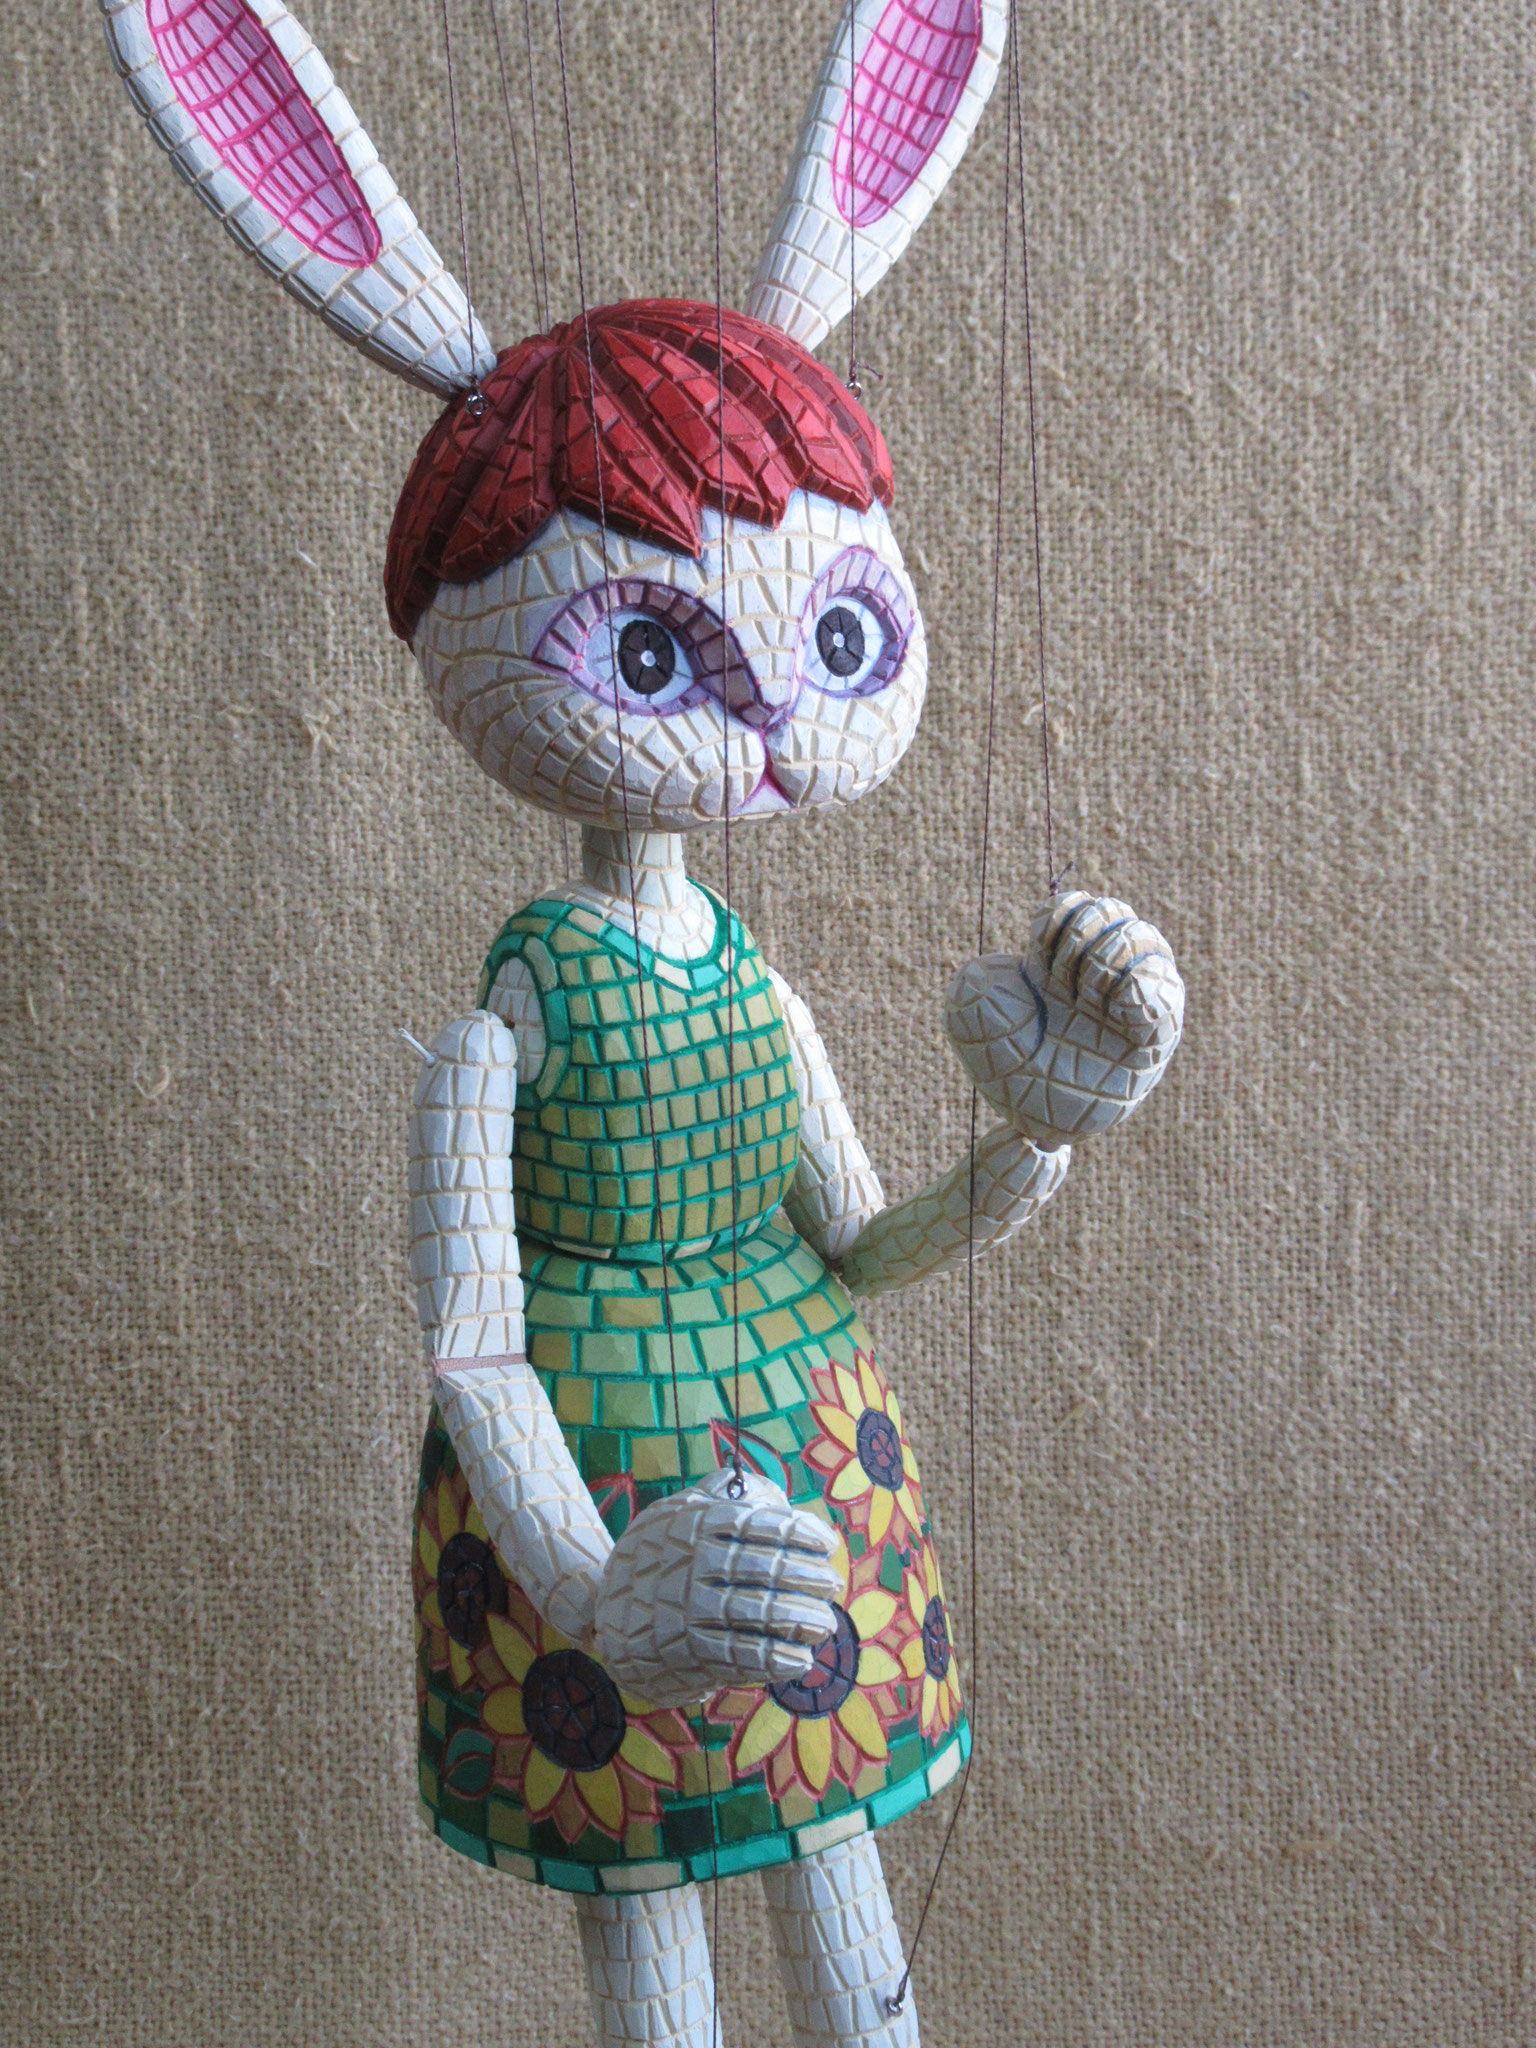 『留夏・Luca』(2021.02.01）Mosaic-style marionette 